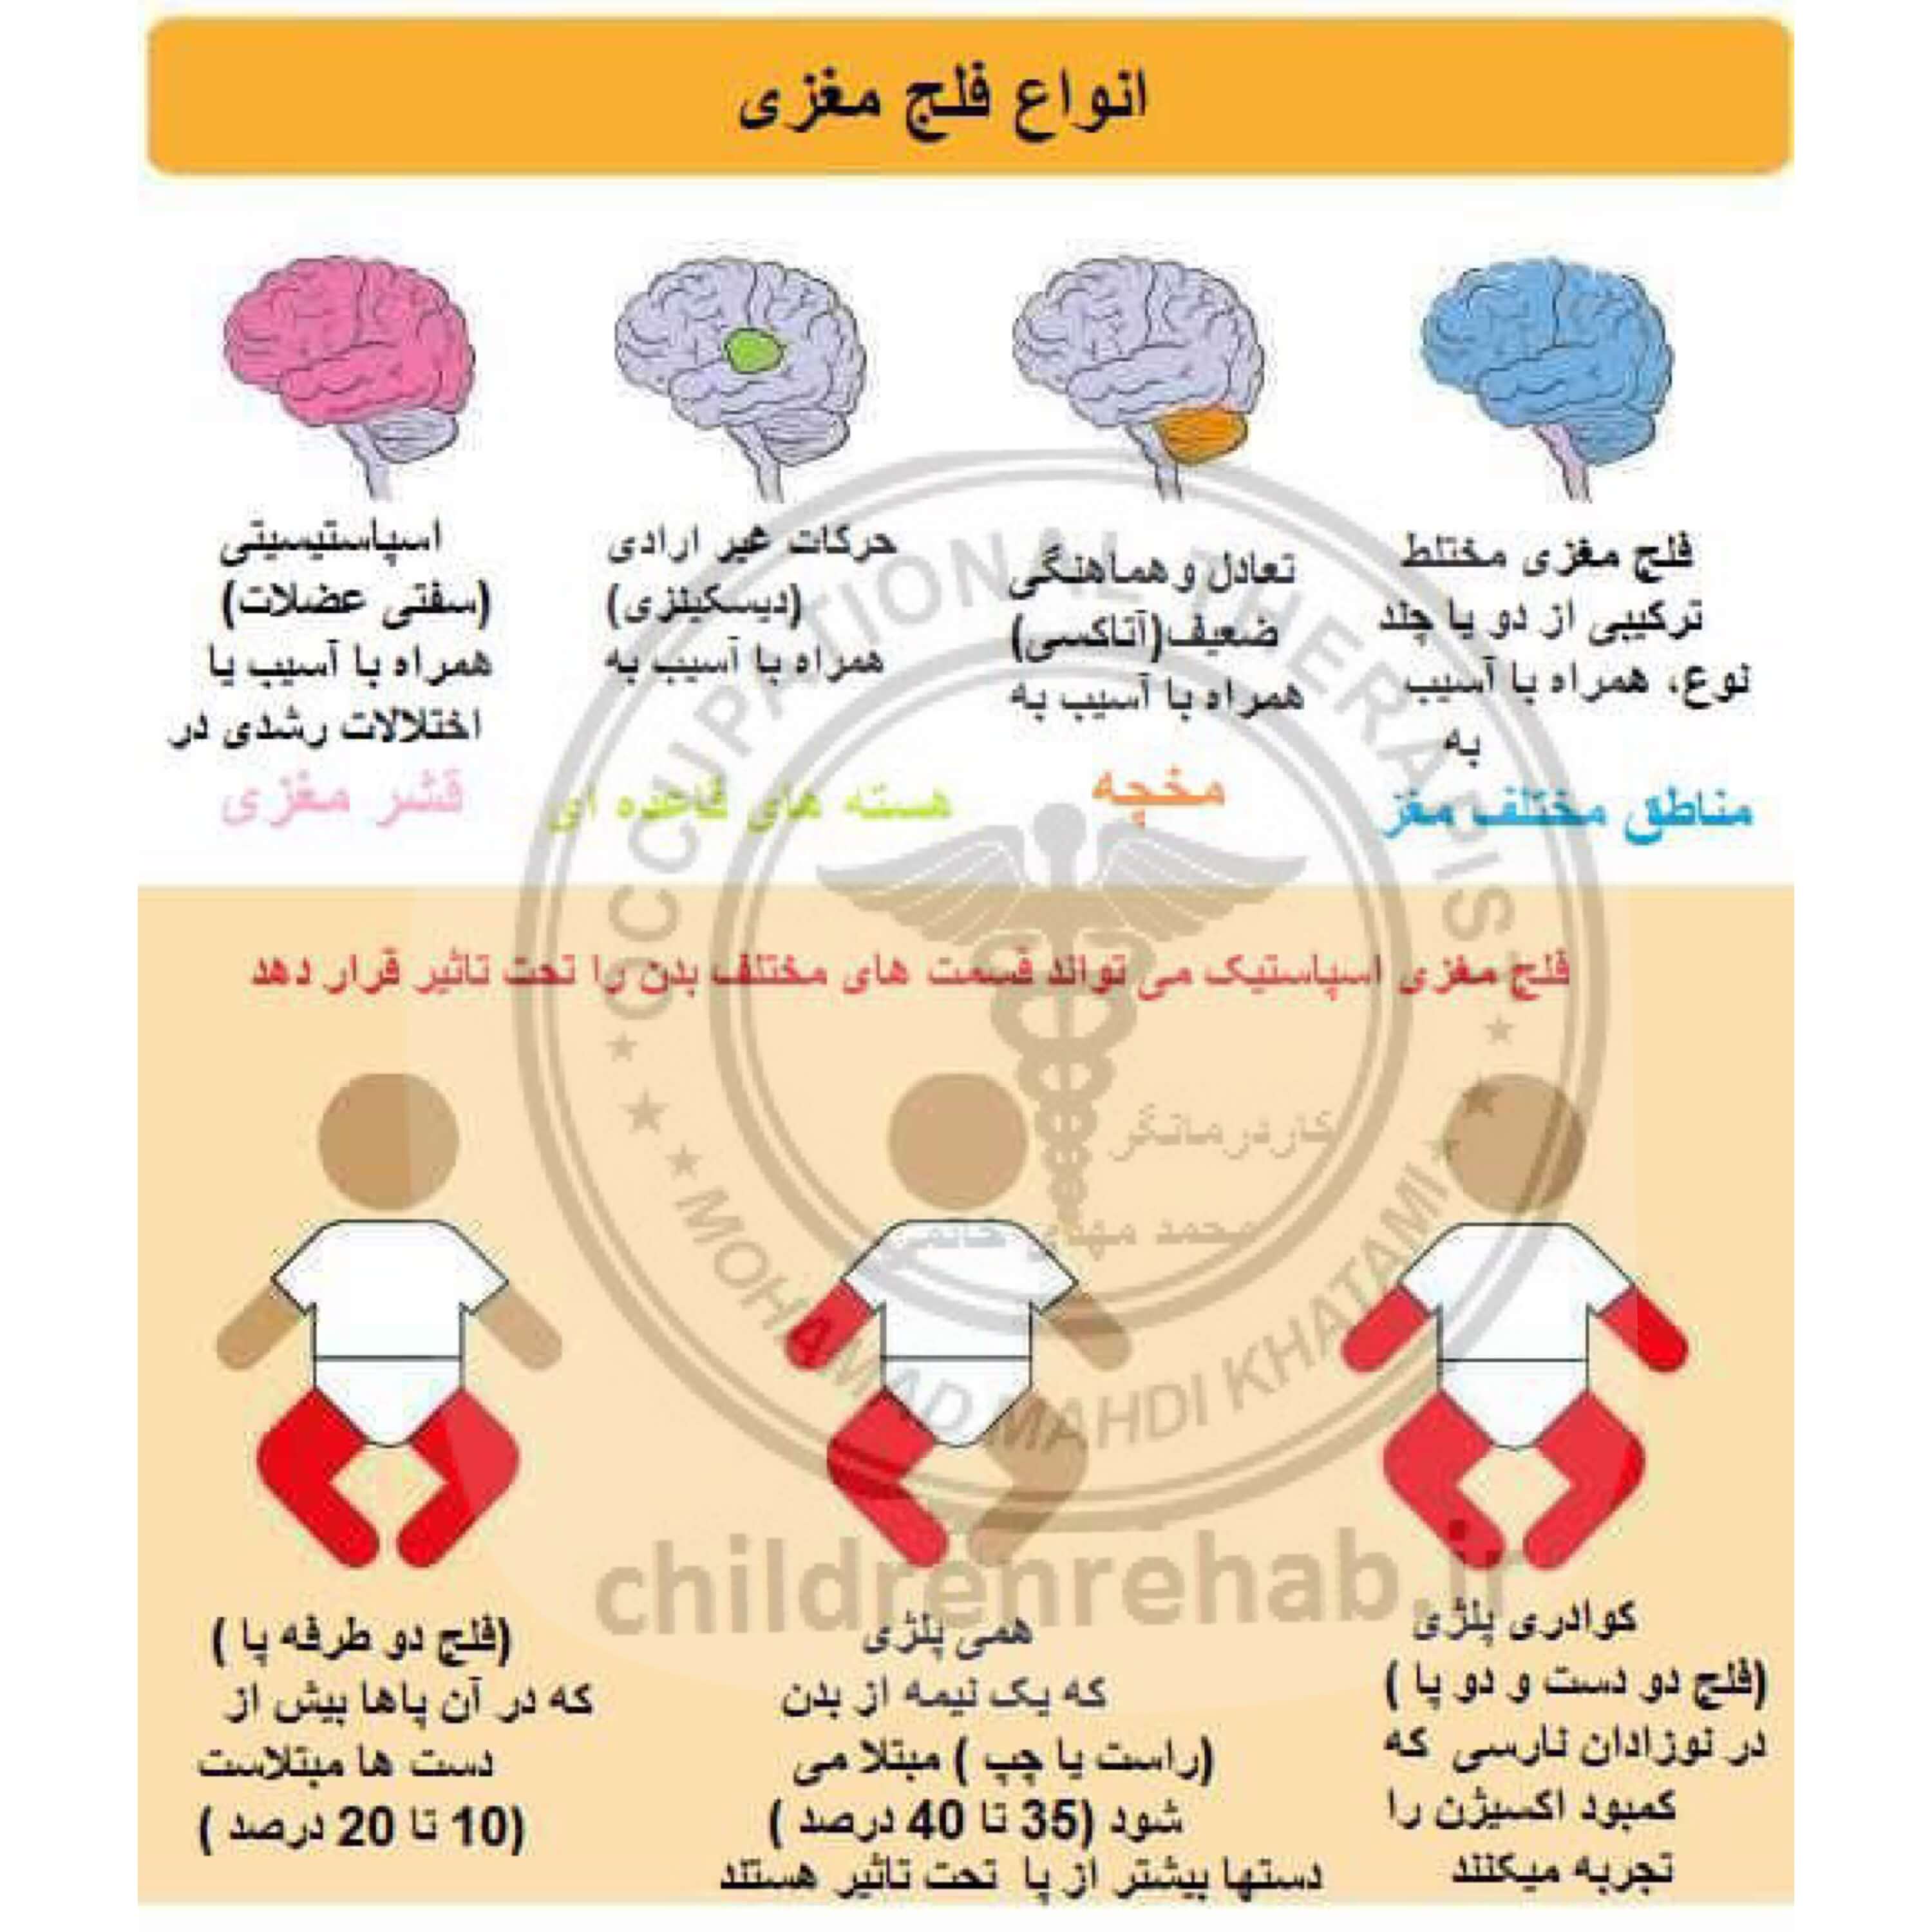 کاردرمانی در کودکان فلج مغزی